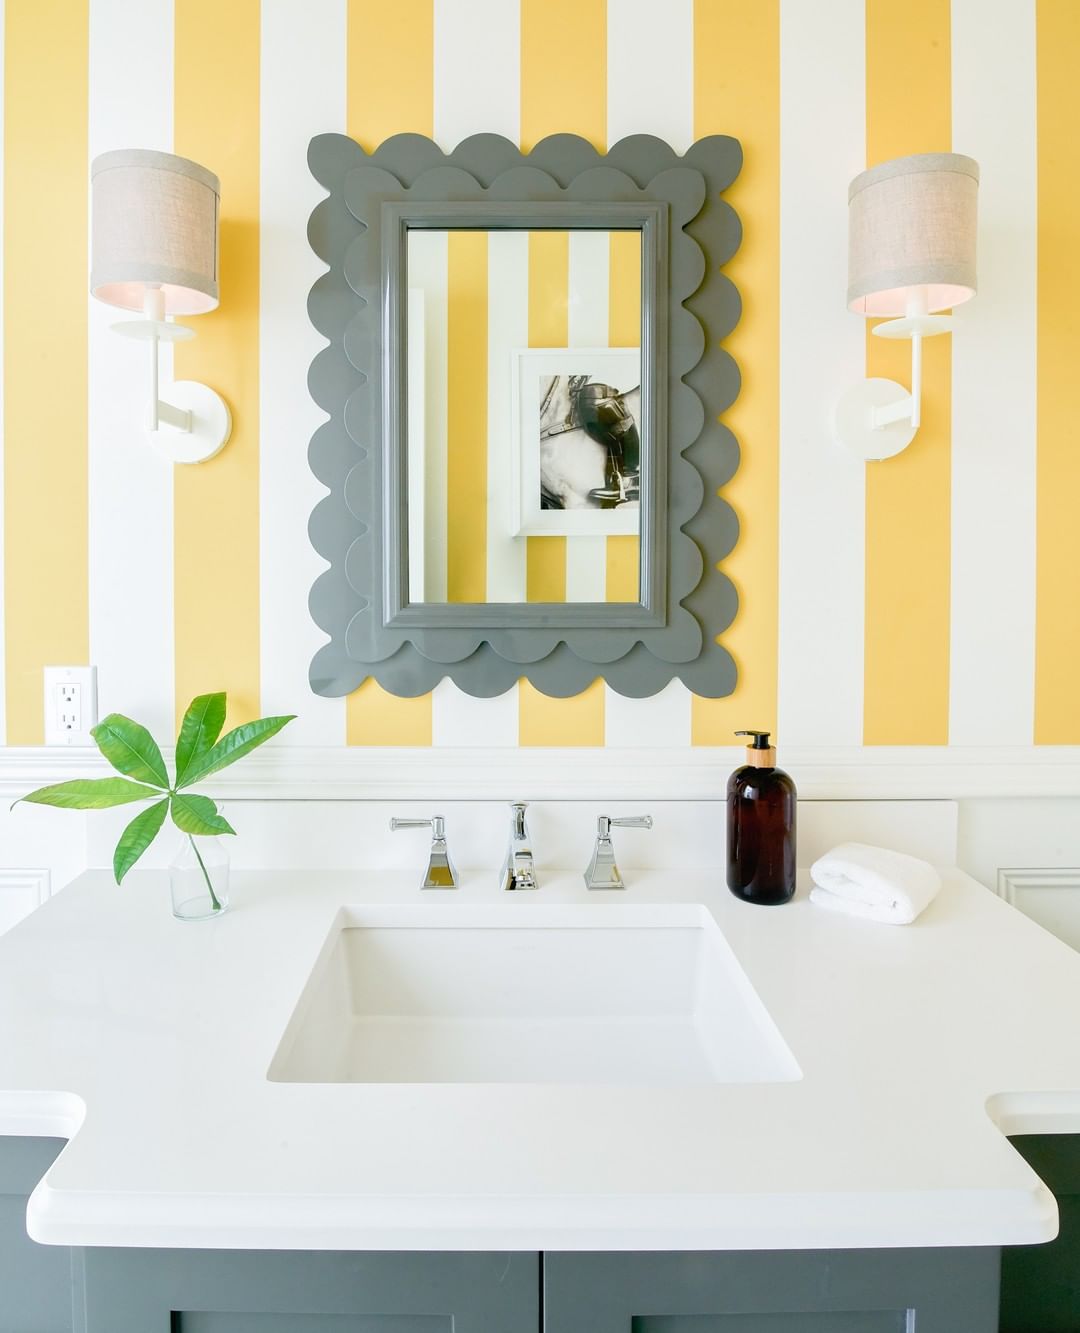 Họa tiết kẻ sọc vàng - trắng của giấy dán tường kết hợp thiết kế xếp lớp kiểu vảy cá cho khung gương giúp khu vực bồn rửa bắt mắt hơn. Mẫu giấy dán tường này được sử dụng cho toàn bộ phòng tắm nhưng không hề “chói lóa”.